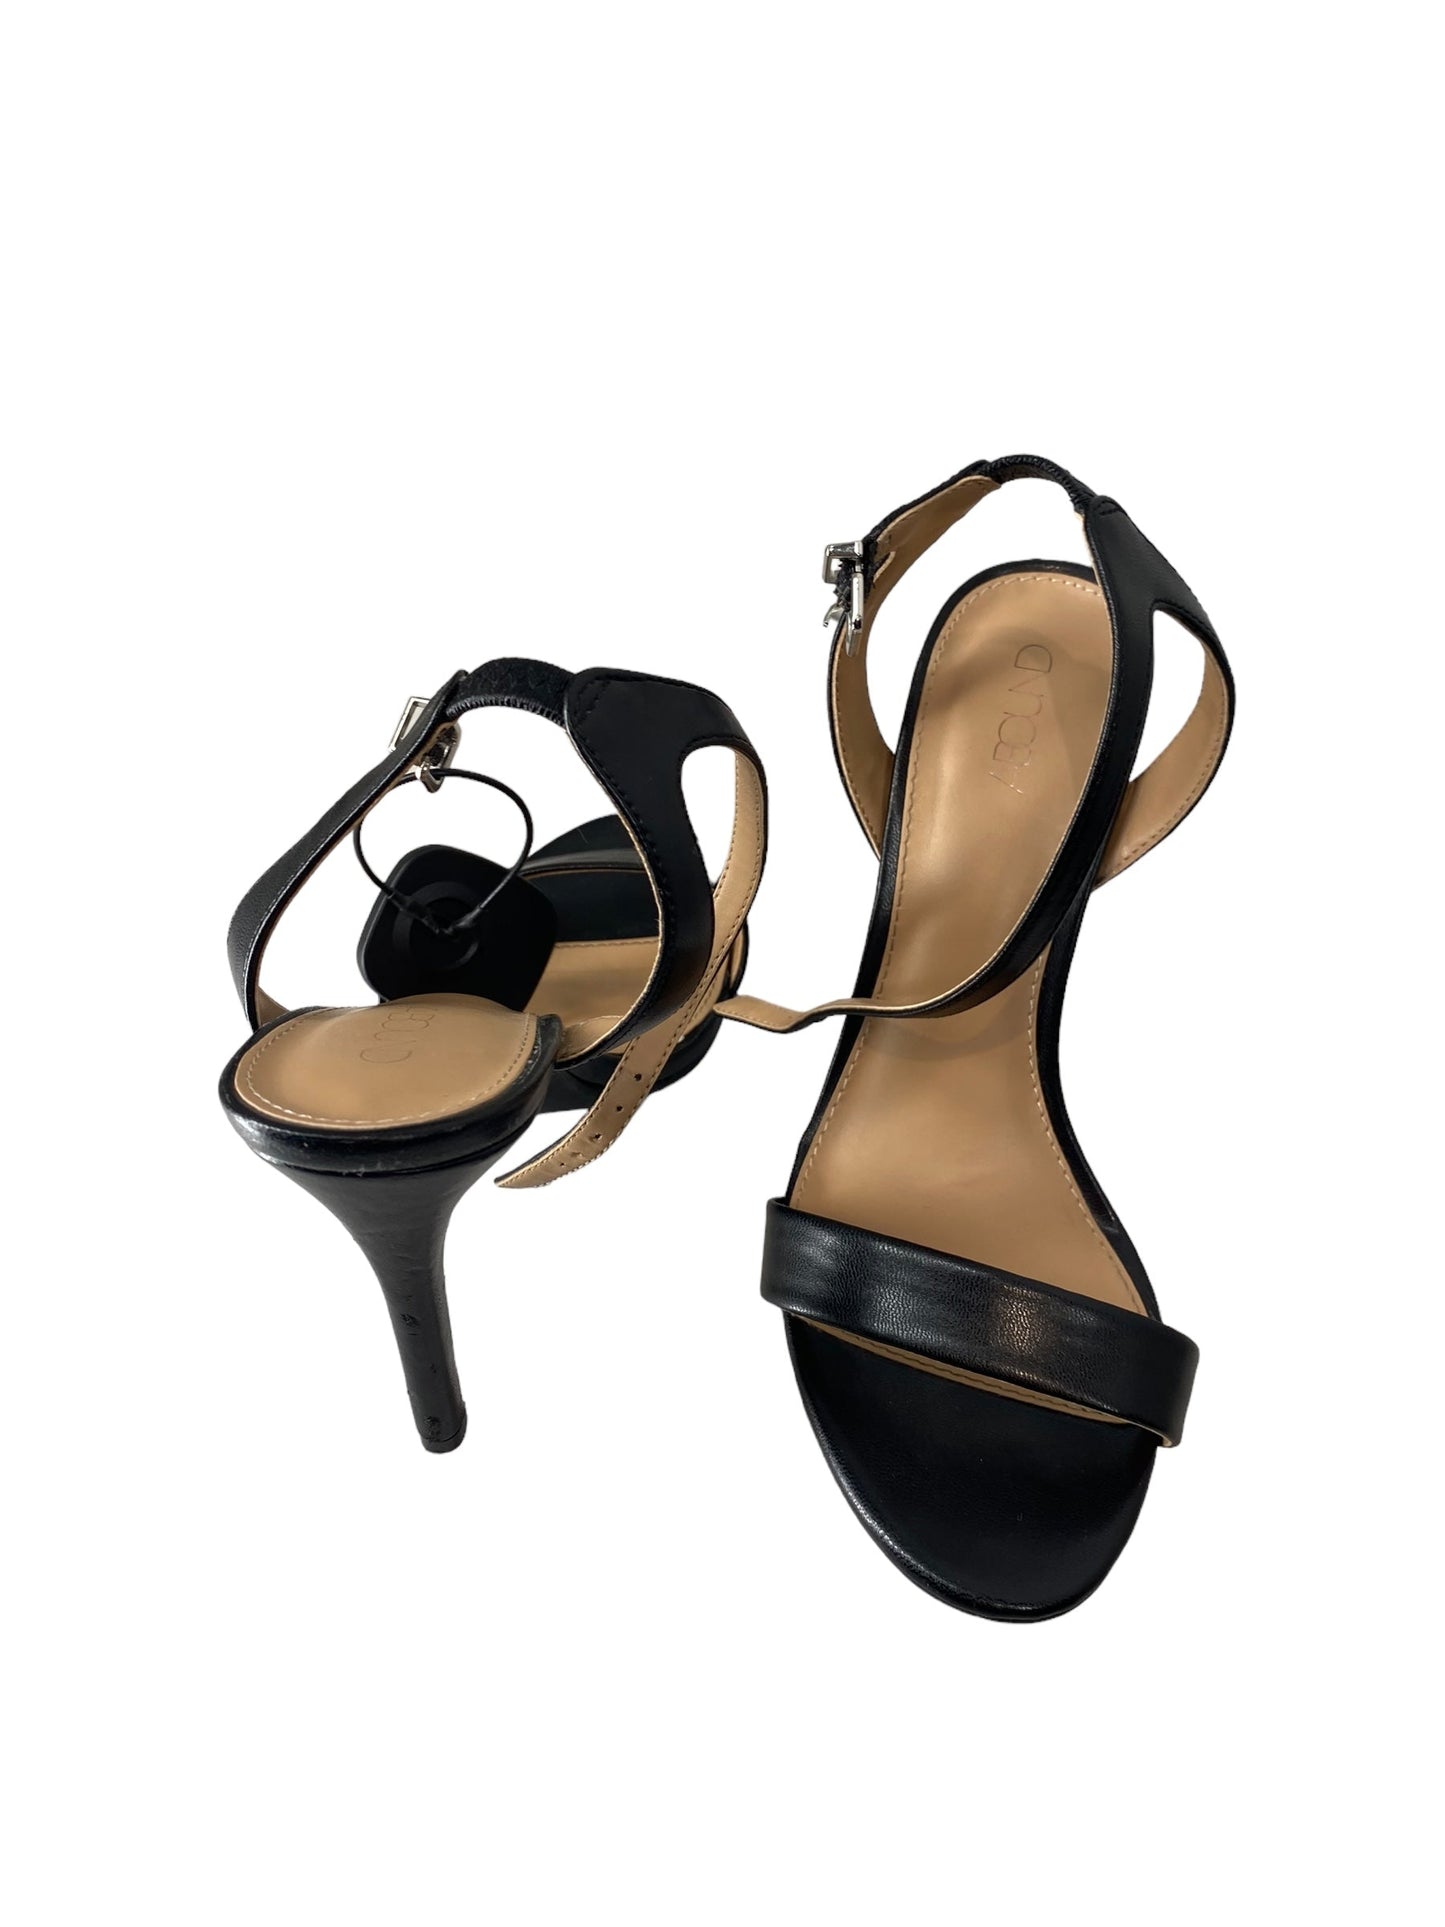 Black Shoes Heels Stiletto Abound, Size 8